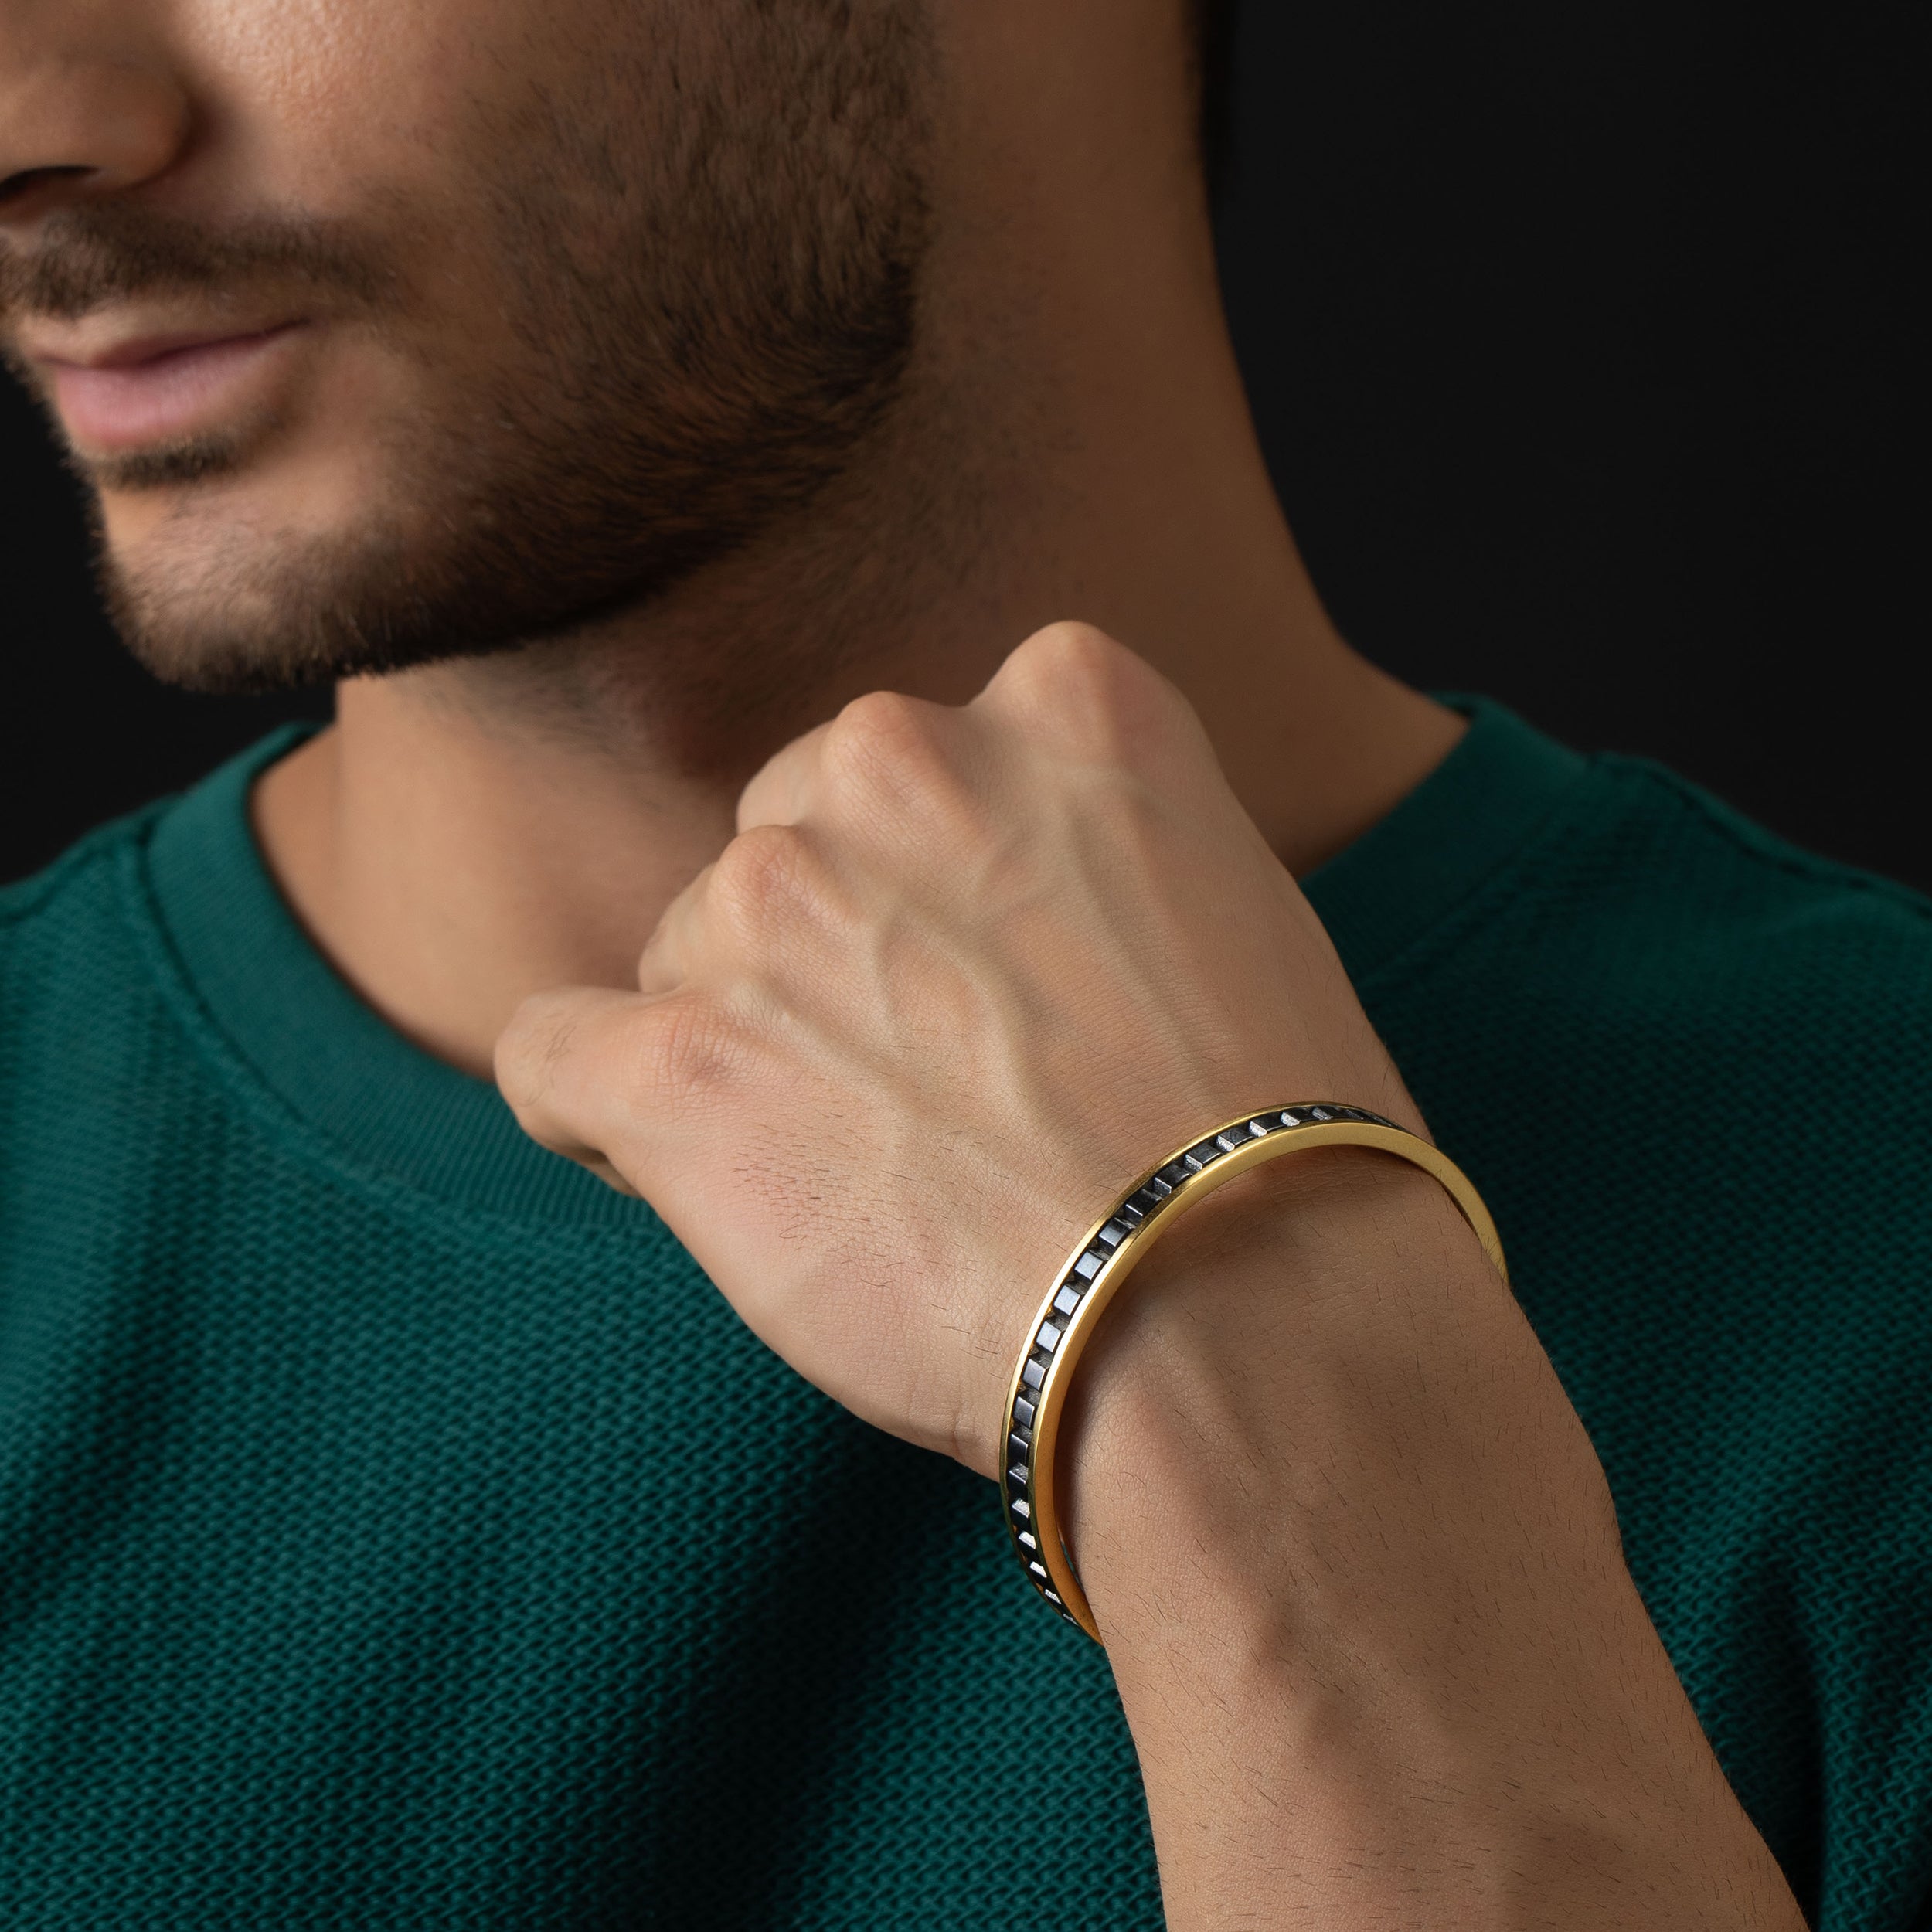 Black and Gold Mosaic Men's Bracelet | SKU : 0020420246, 0020420291